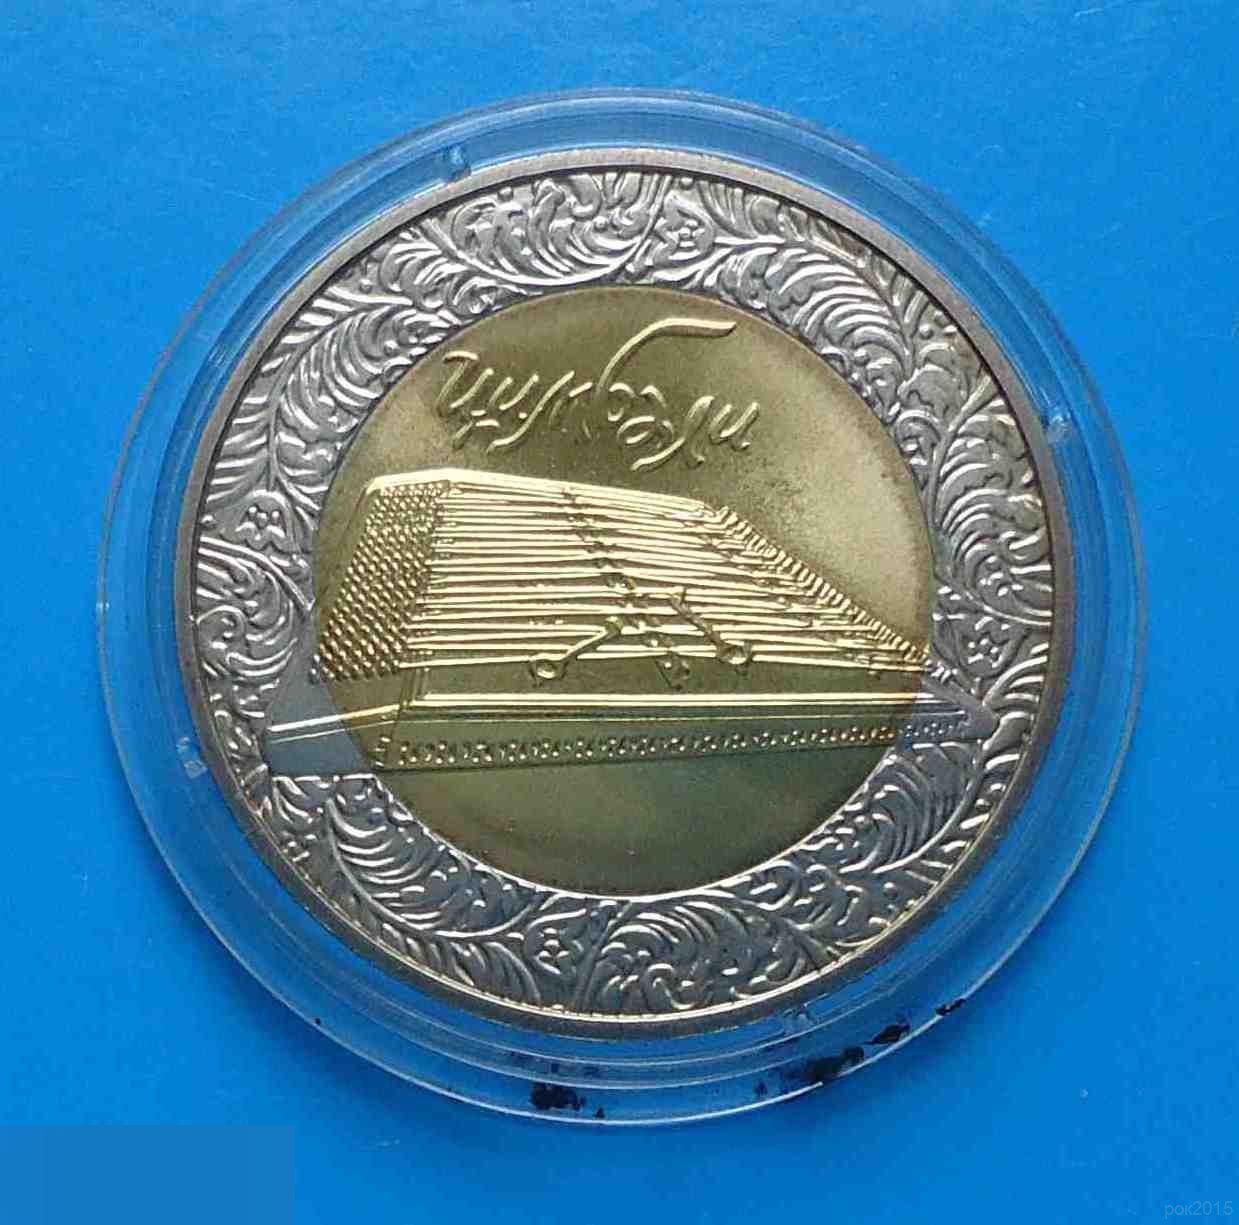 5 гривен 2006 года Цимбалы Украина